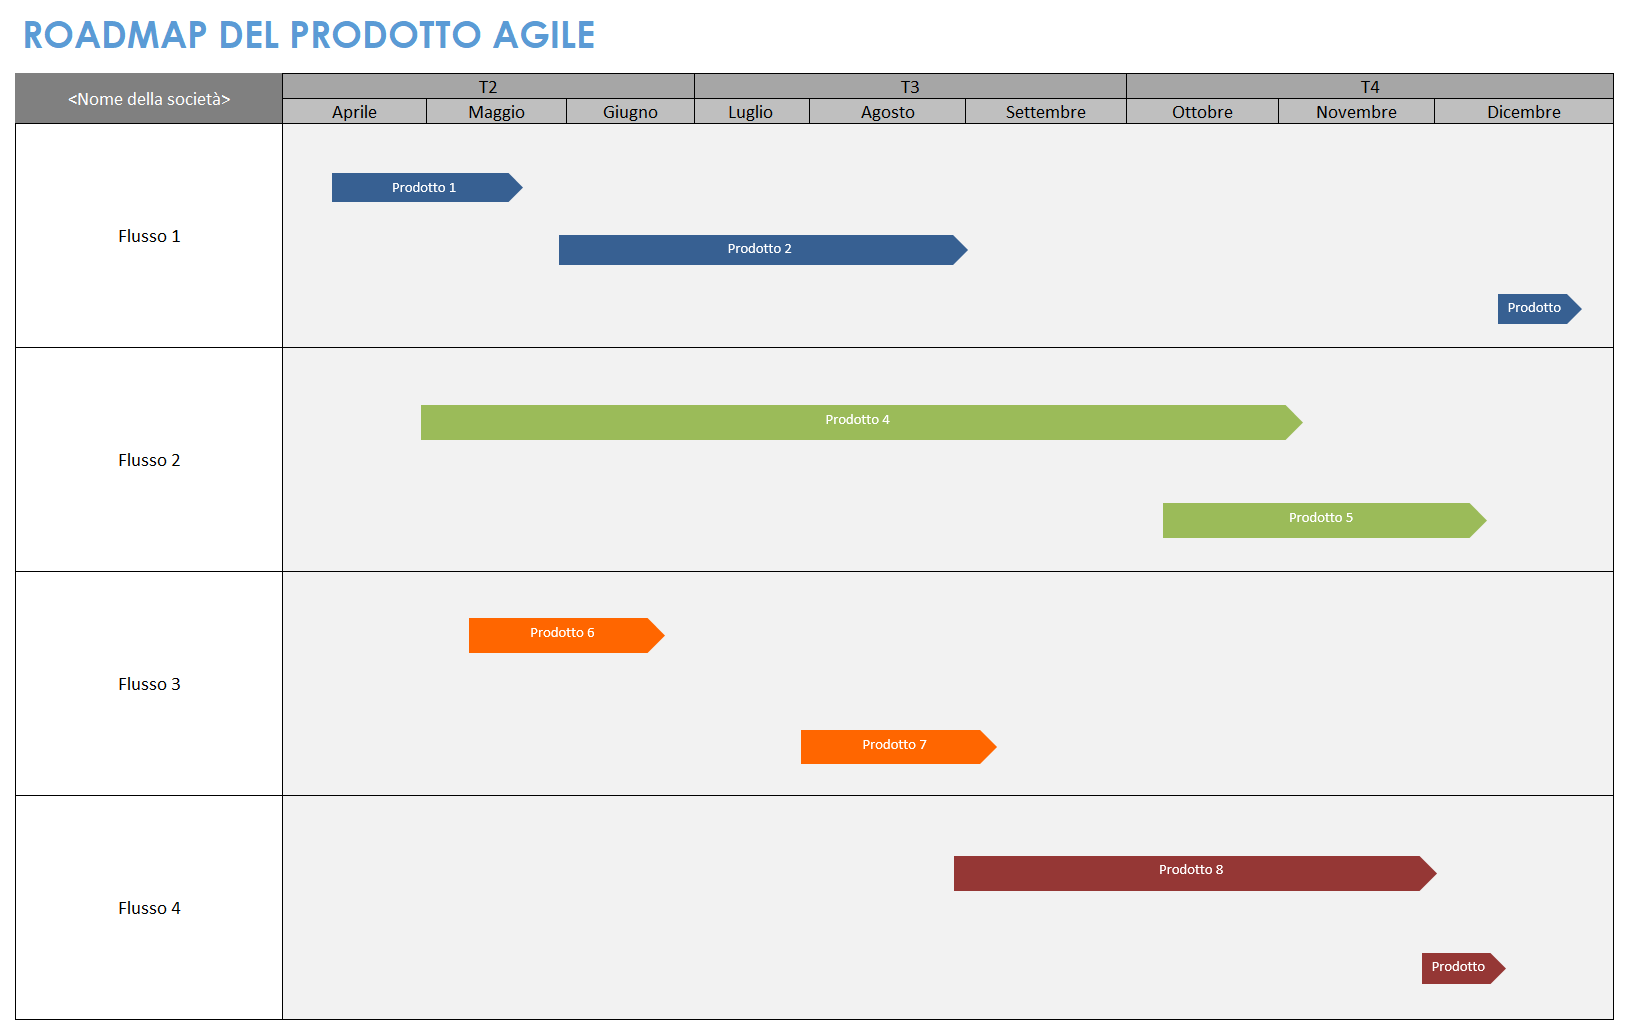 Modello di roadmap di prodotto agile